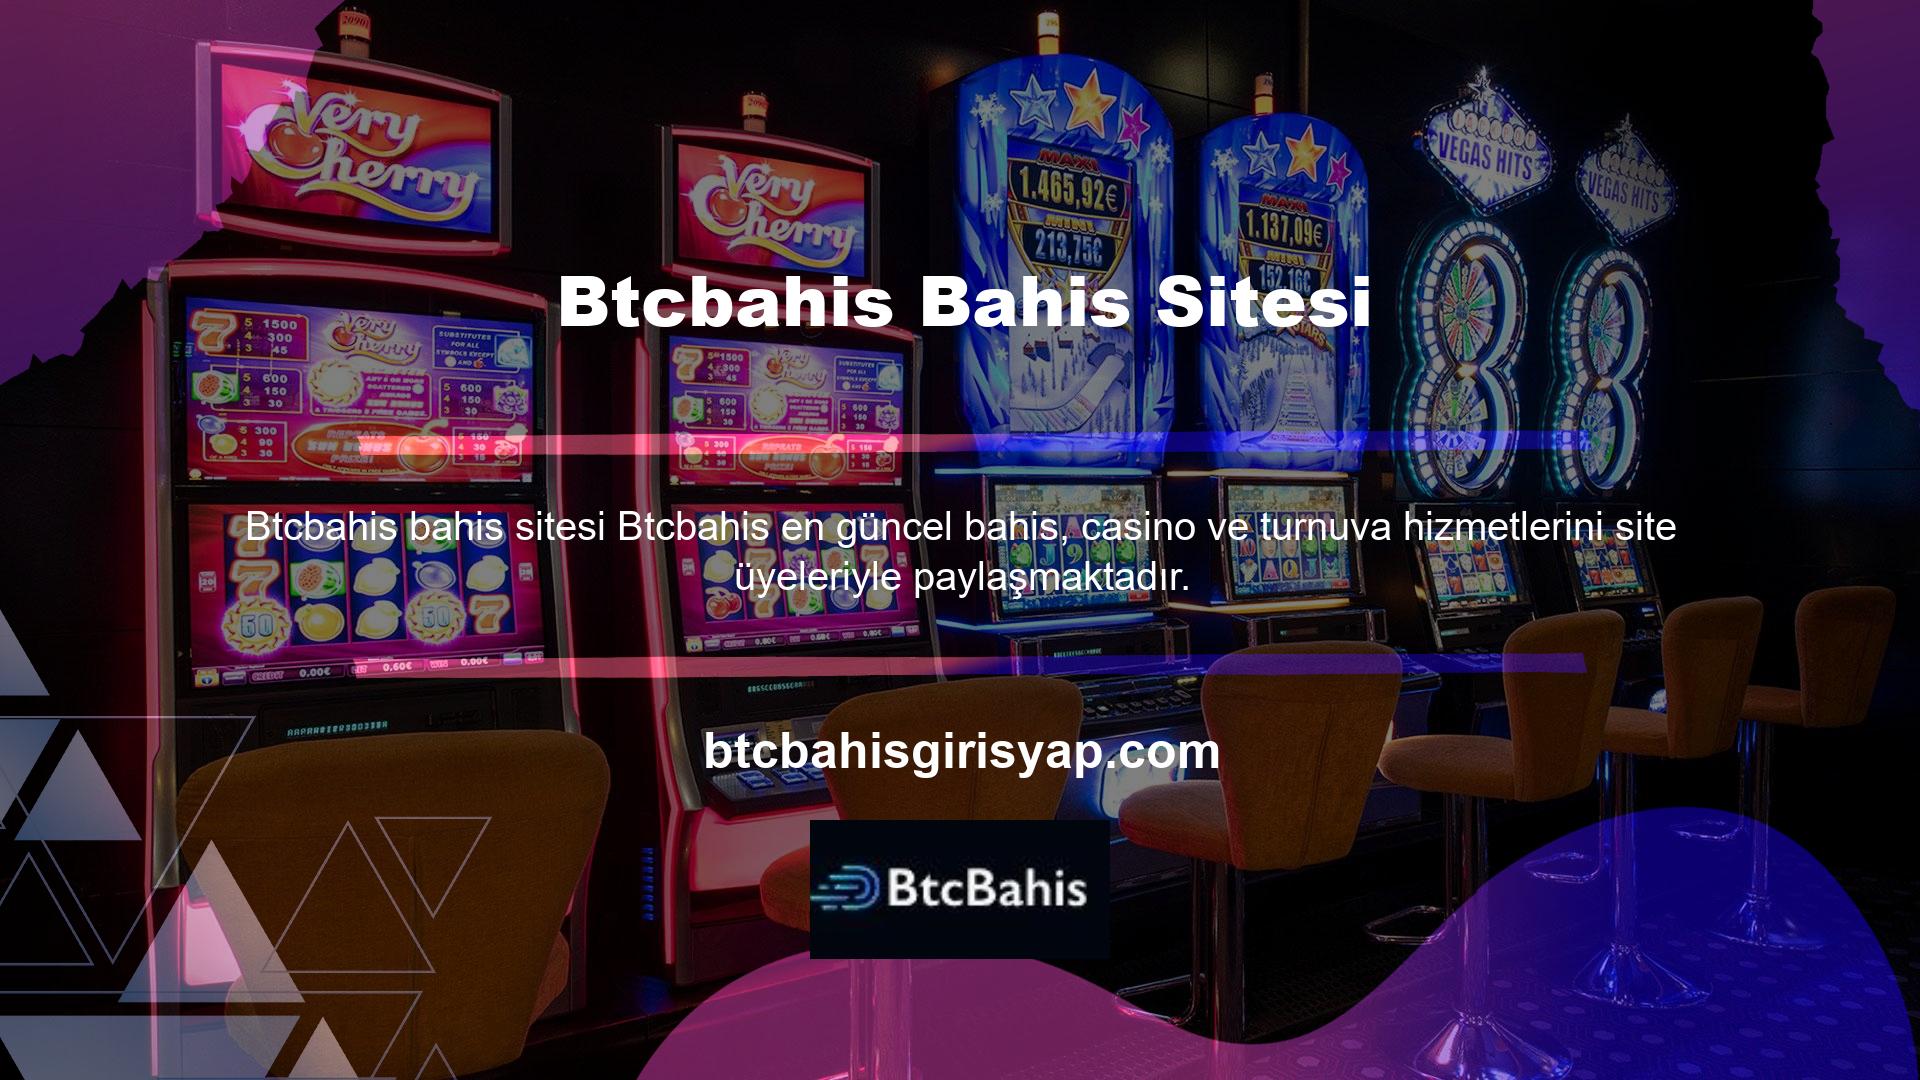 Btcbahis web sitesi, internette canlı maç izlemek isteyenlerin kullanabileceği birçok ağdan biridir